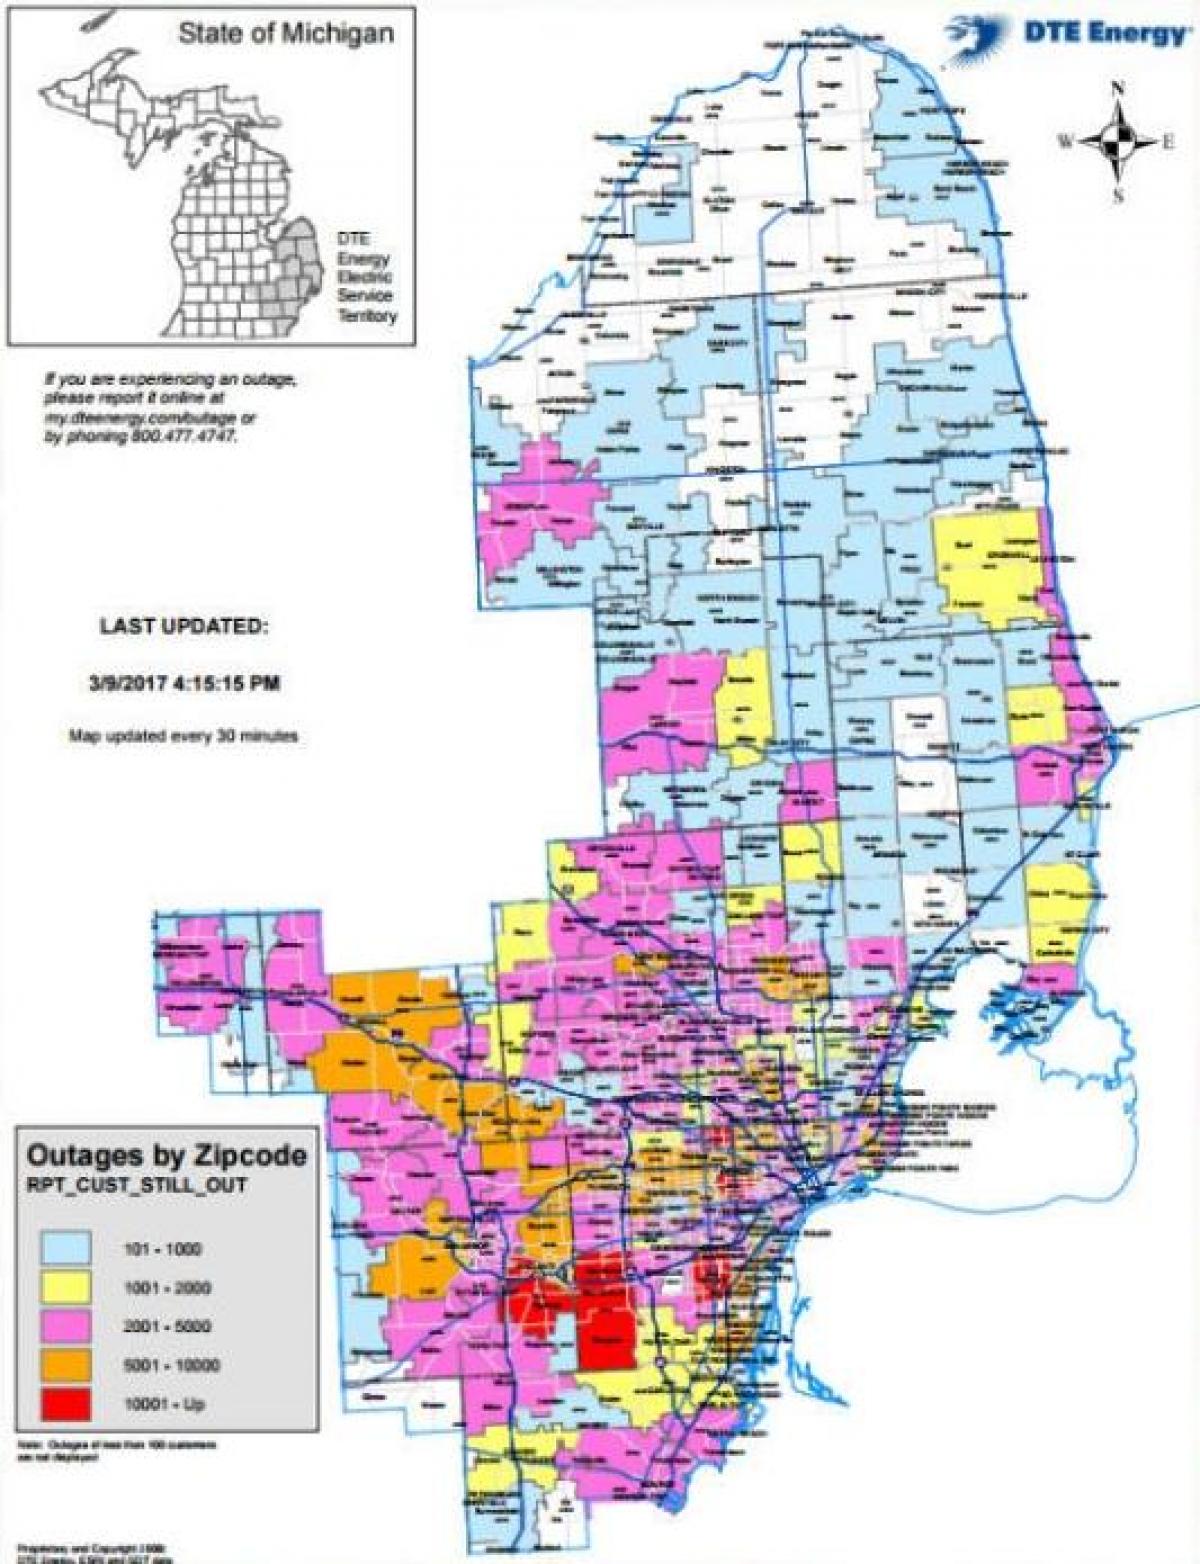 Detroit edison pană de curent hartă